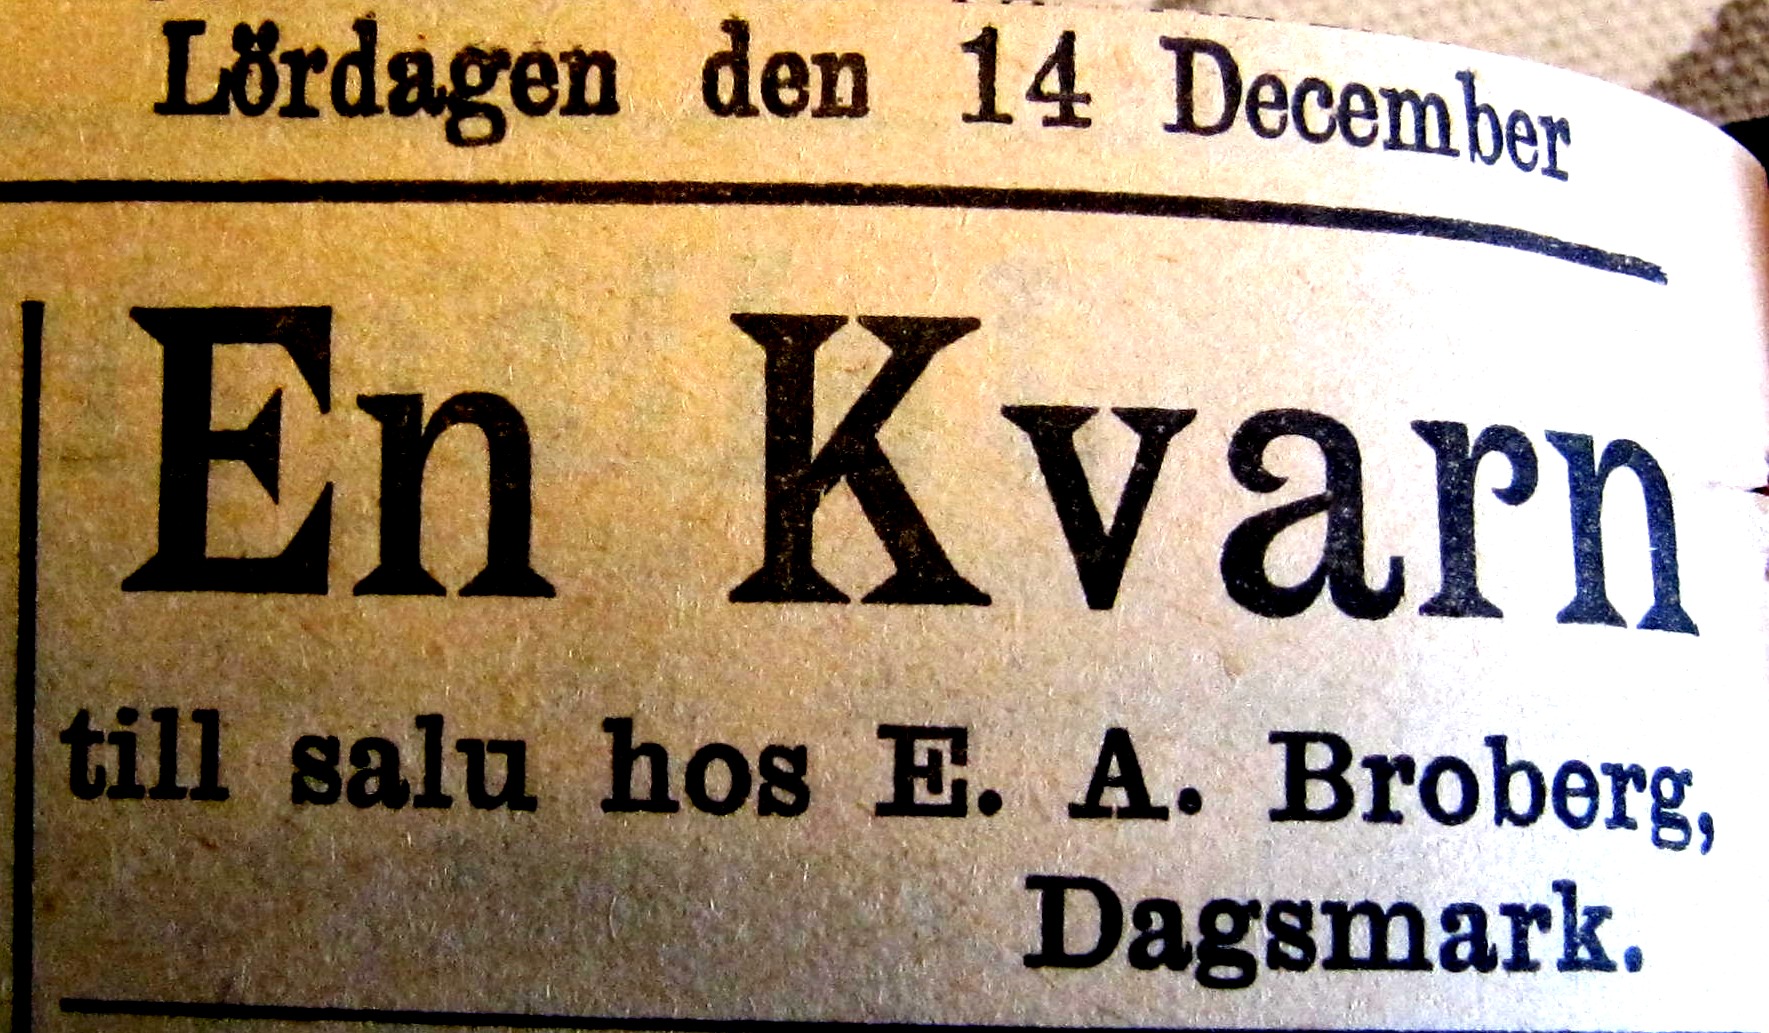 I december 1912 vill Broberg sälja kvarnen enligt en annons i Syd-Österbotten.